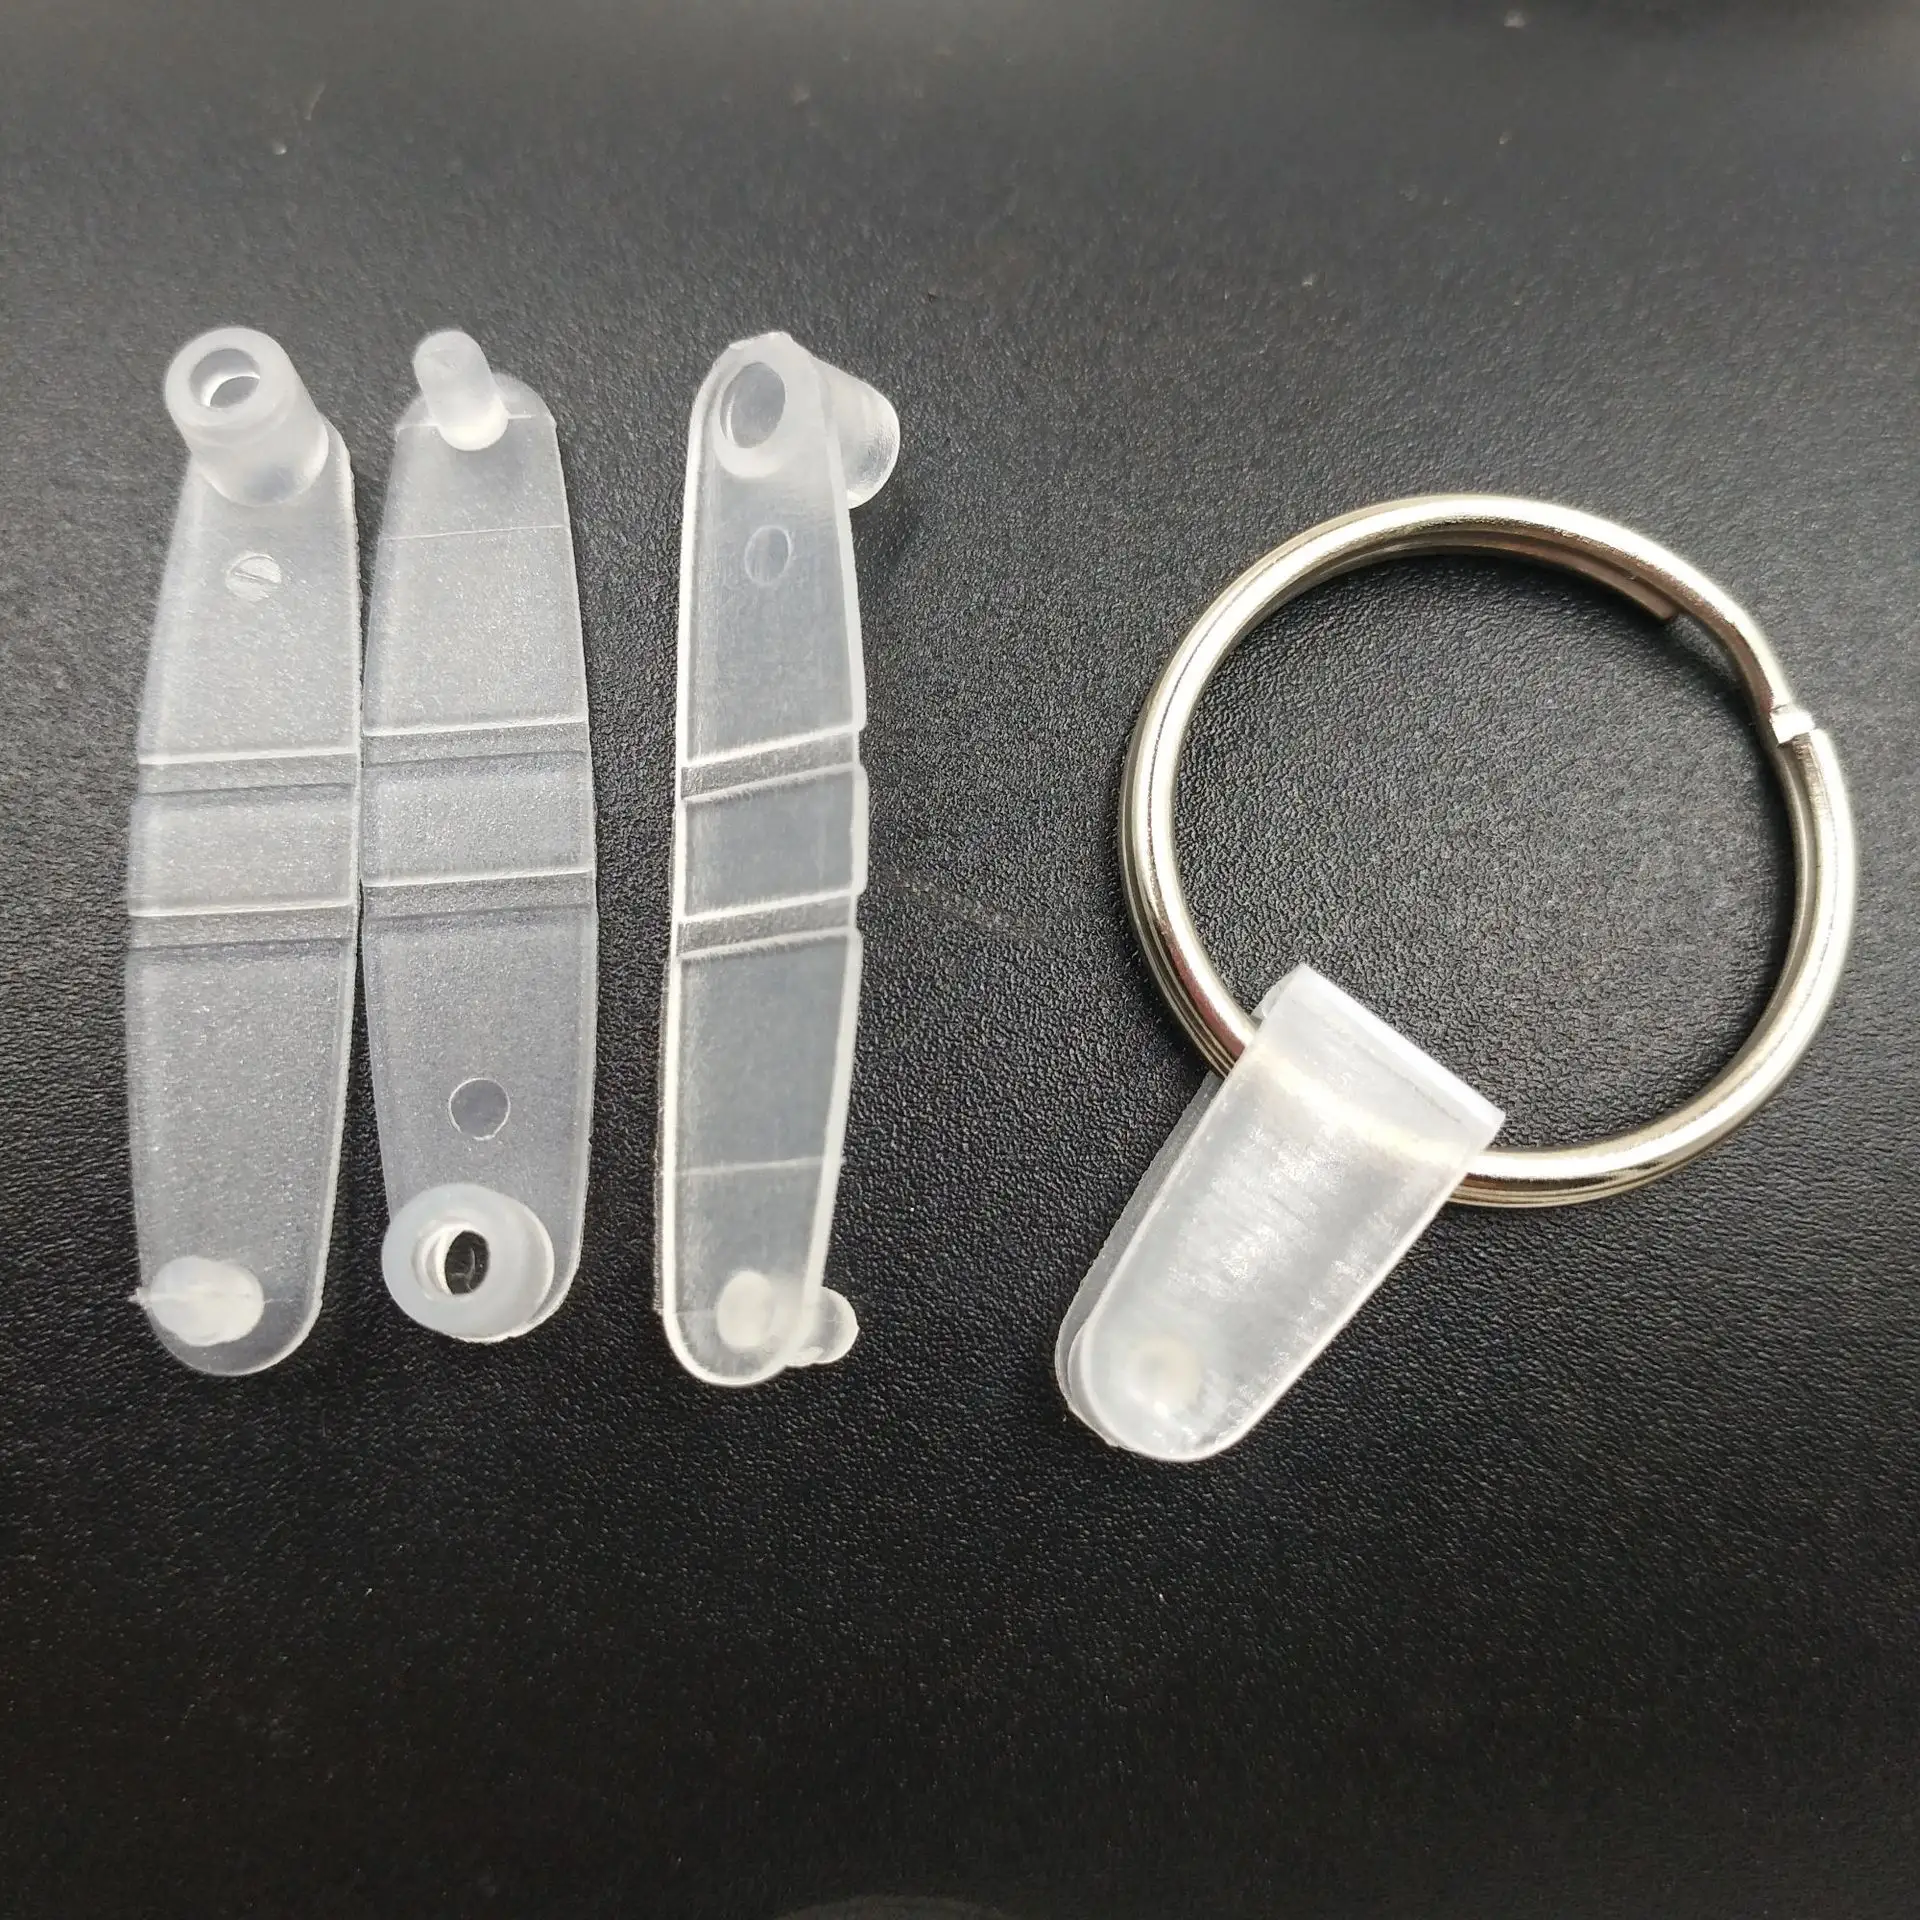 키 링 금속 승화 키 홀더 액세서리 플라스틱 키 체인 커넥터 클립 분할 투명 PP 플라스틱 클립 버튼 열쇠 고리